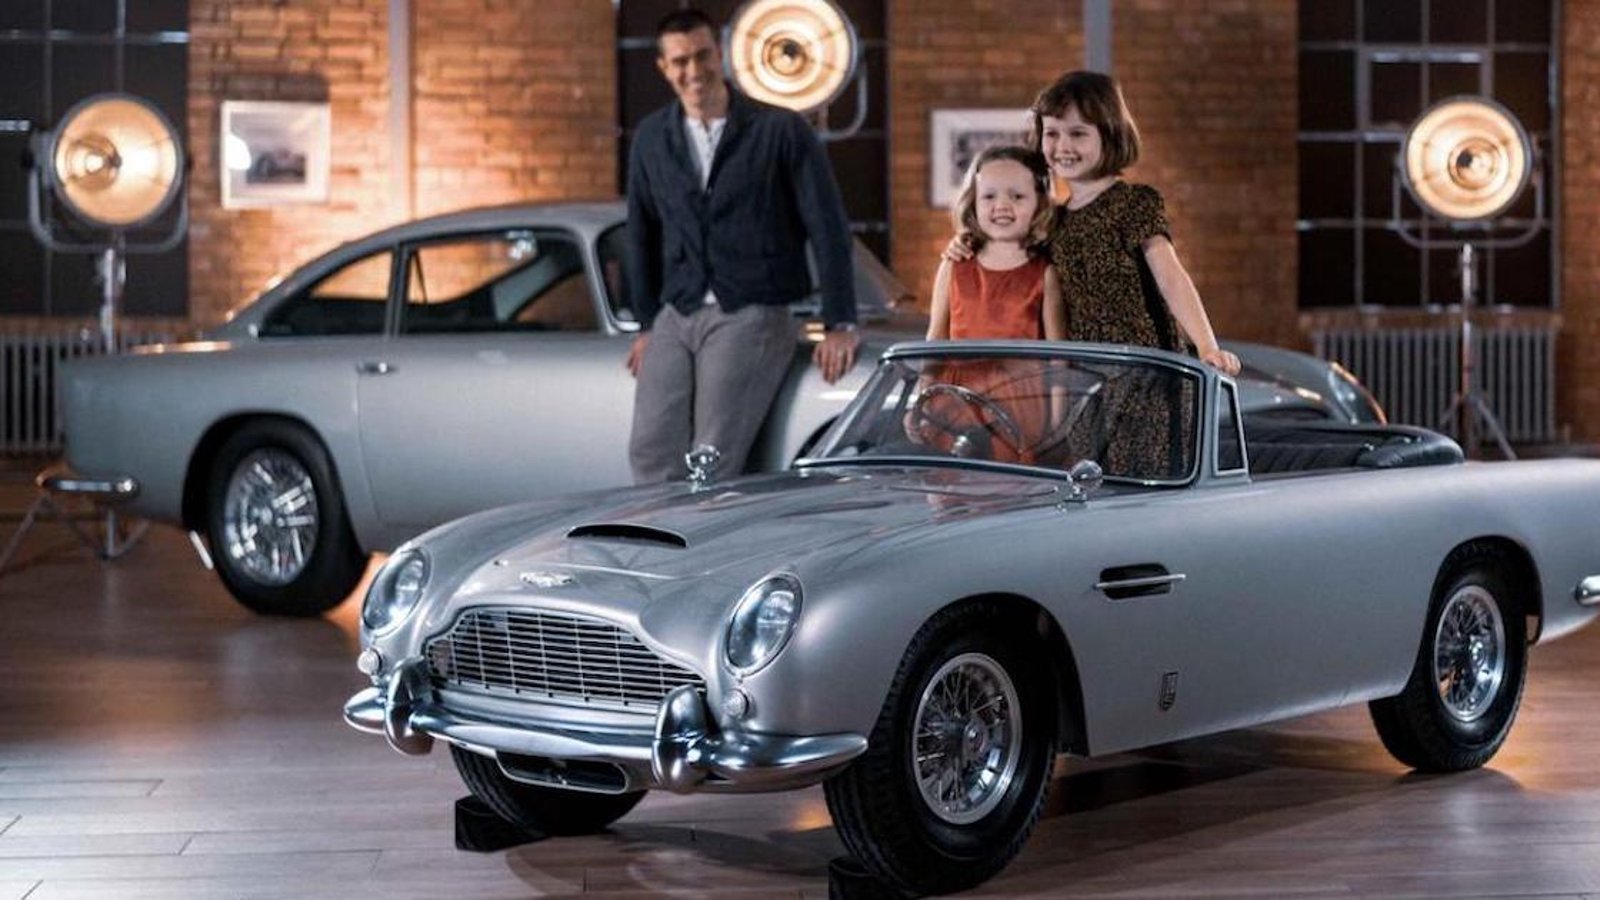 Jouet de luxe pour enfant: l’Aston Martin de James Bond